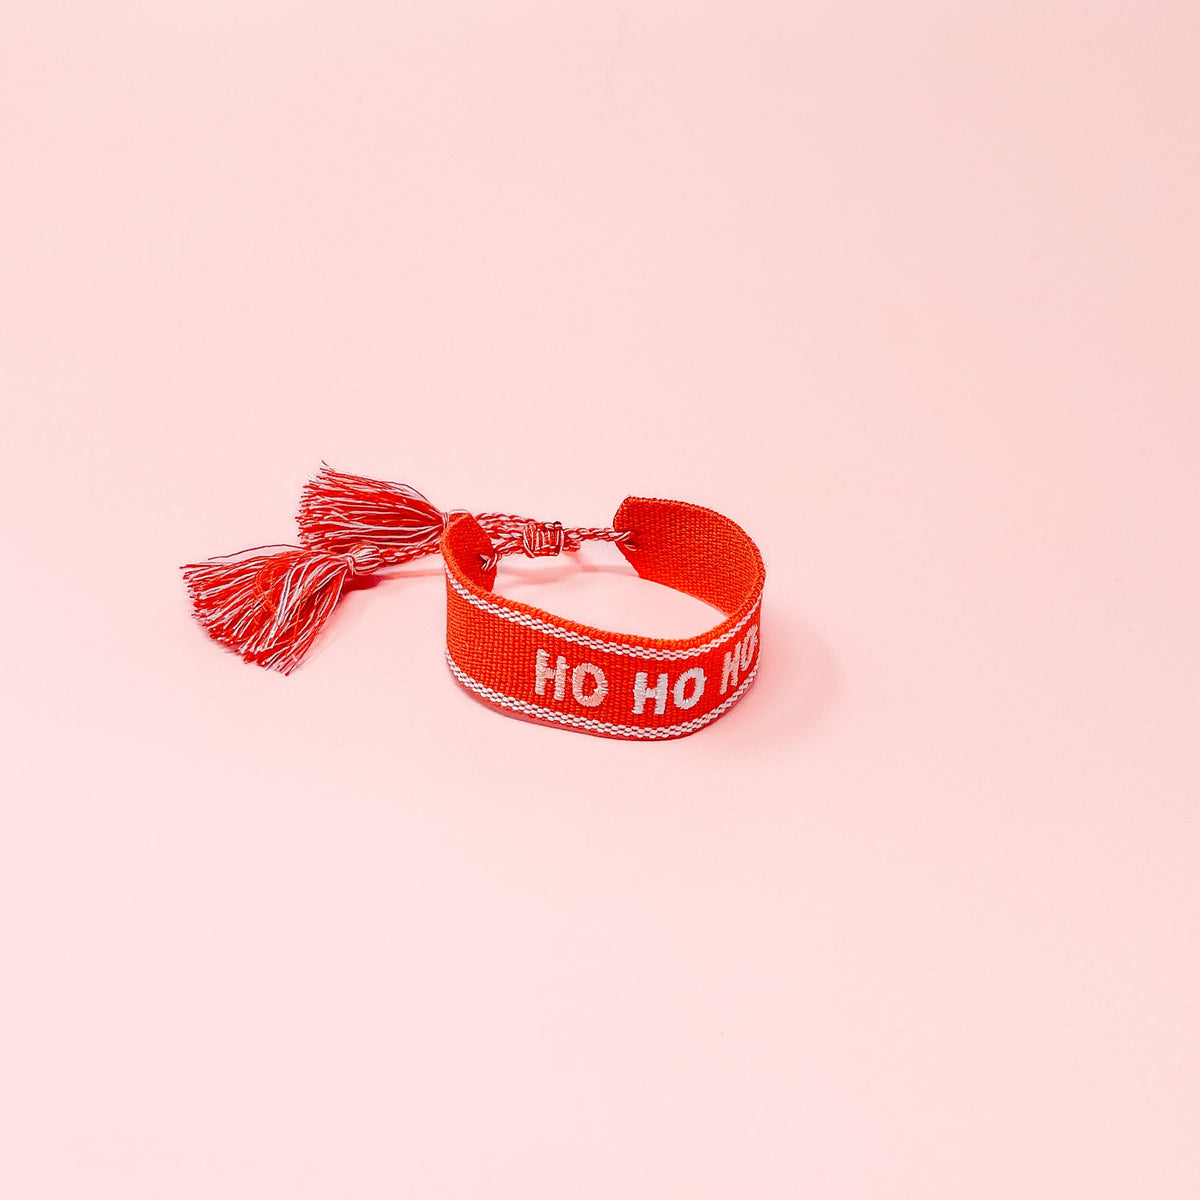 Holiday Woven Word Bracelets - Ho Ho Ho